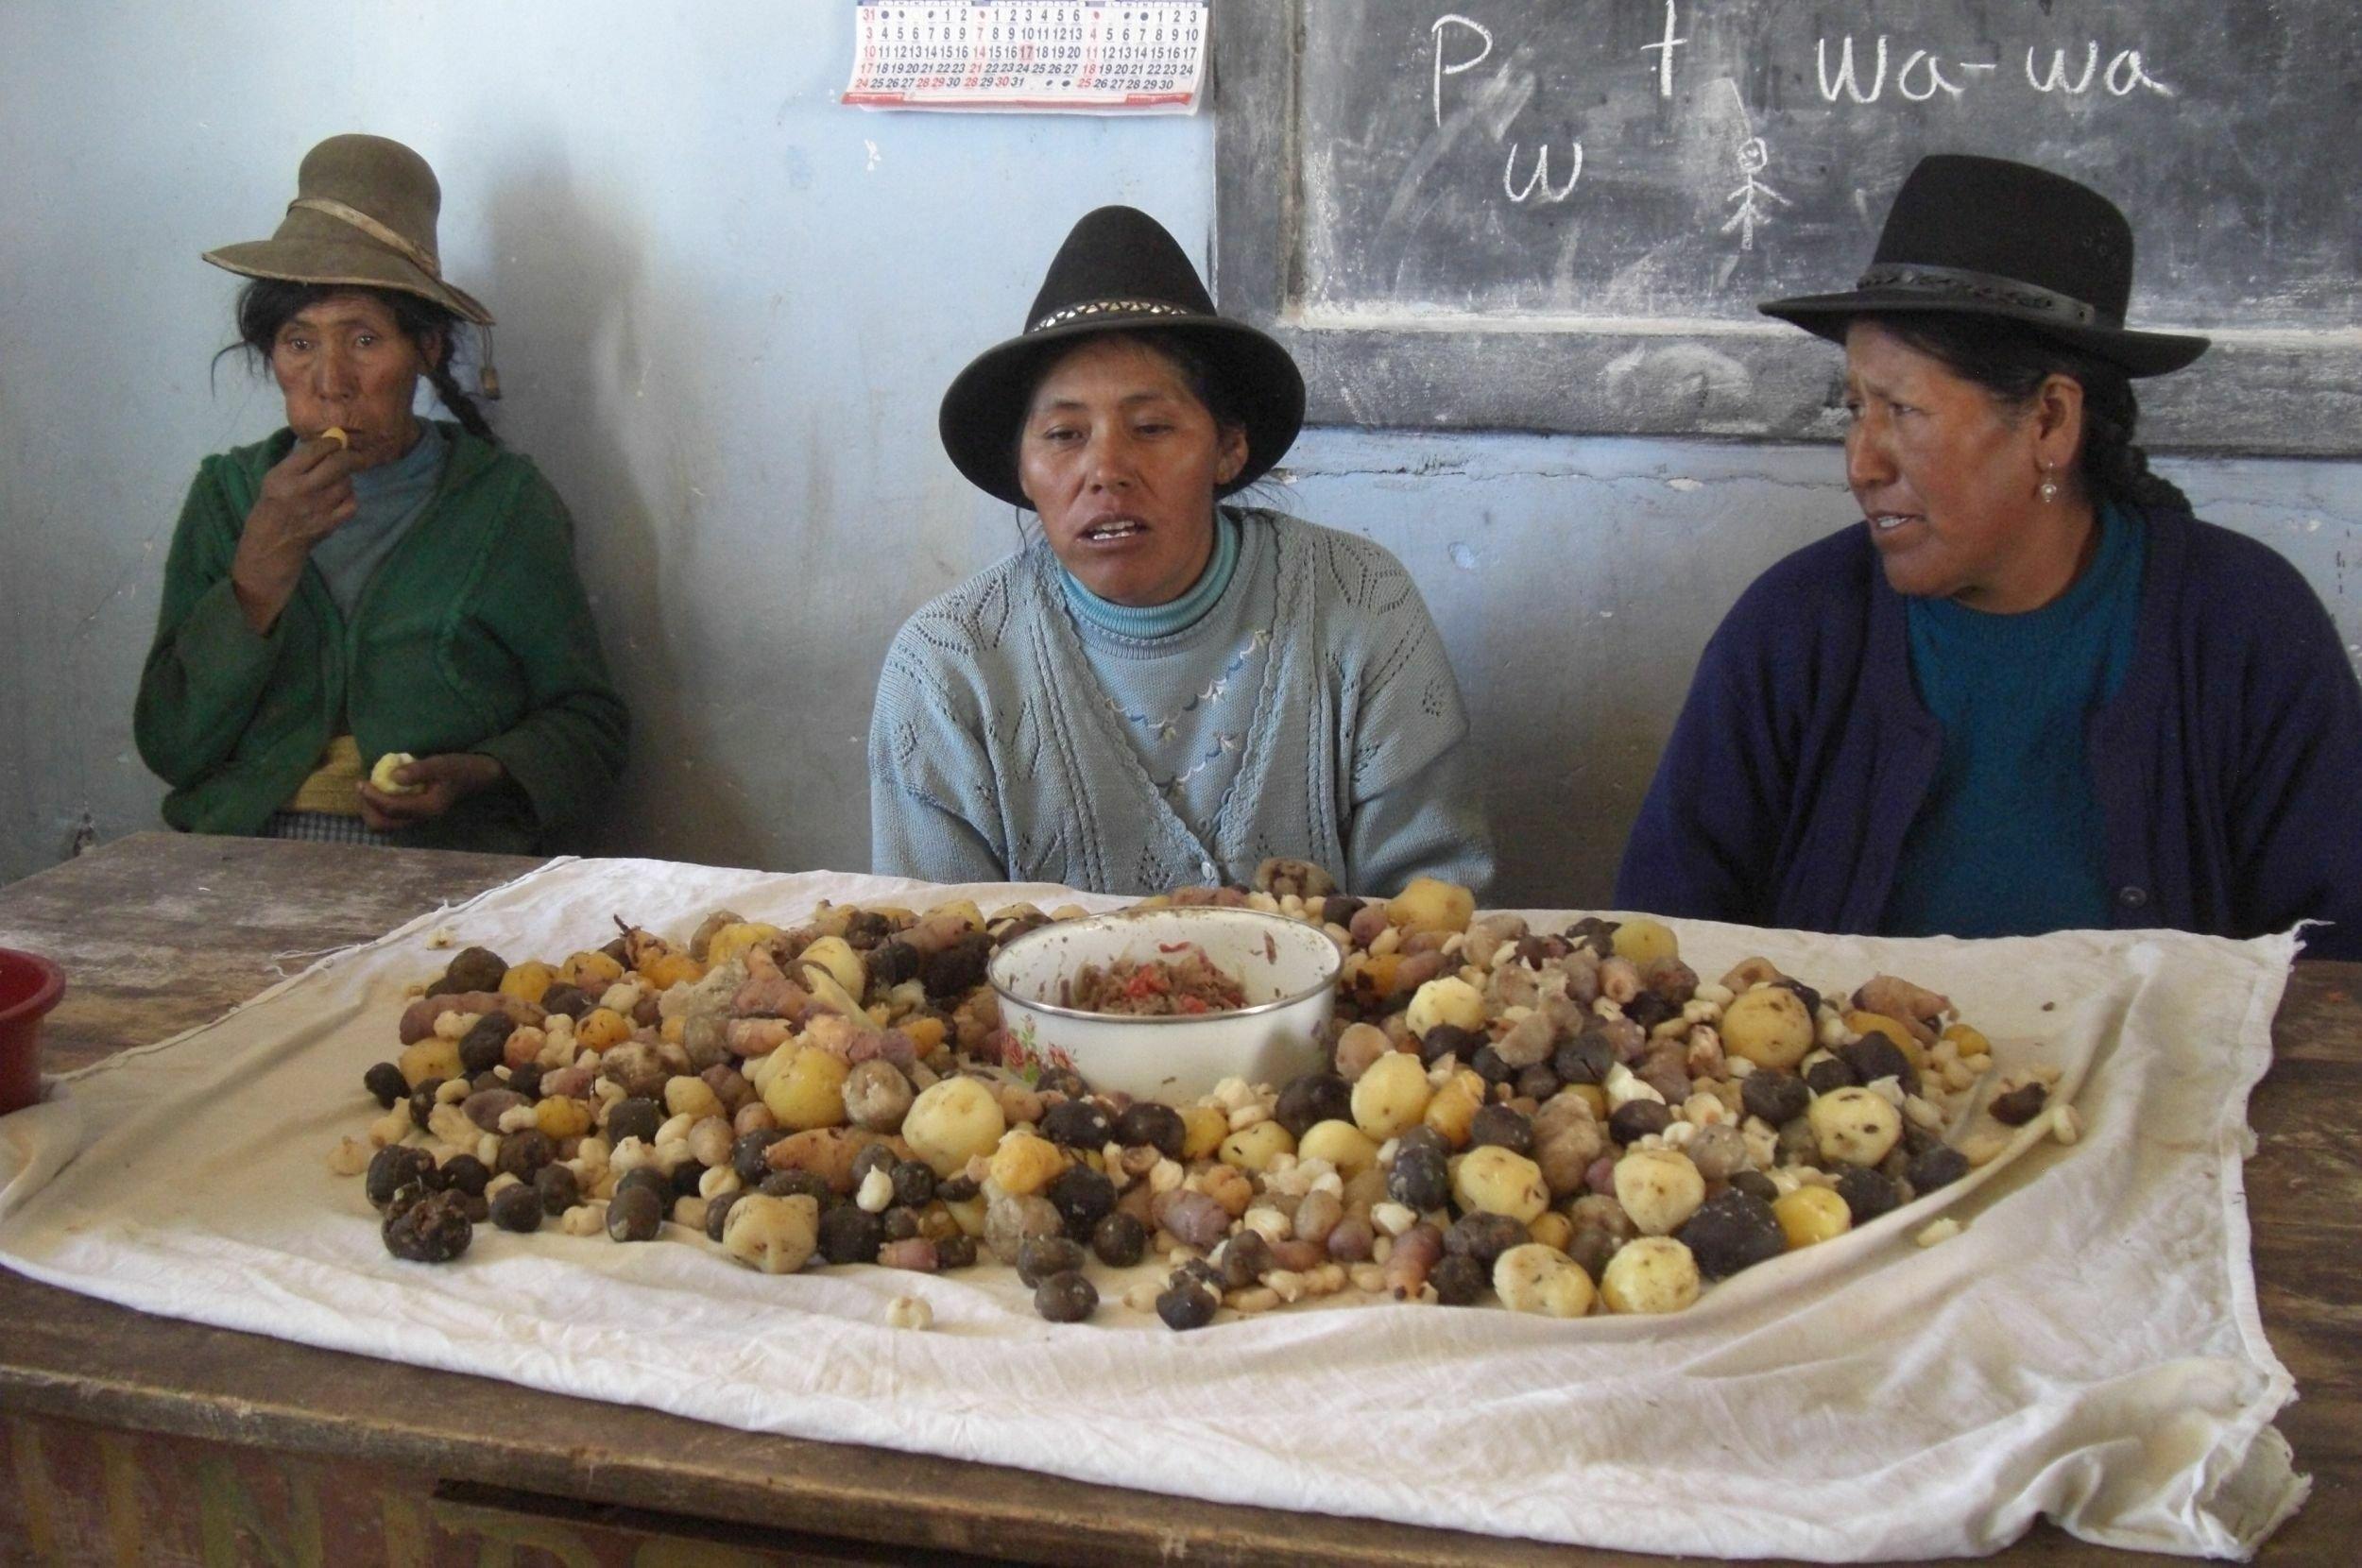 Im Hintergrund drei indigene Frauen mit Hüten, sitzen an einem Tisch. Auf dem Tisch liegt ein großes Tuch, voller geschälter Kartoffeln in allen Formen und Farben. In der Mitte ein Emailletopf mit einer Soße.